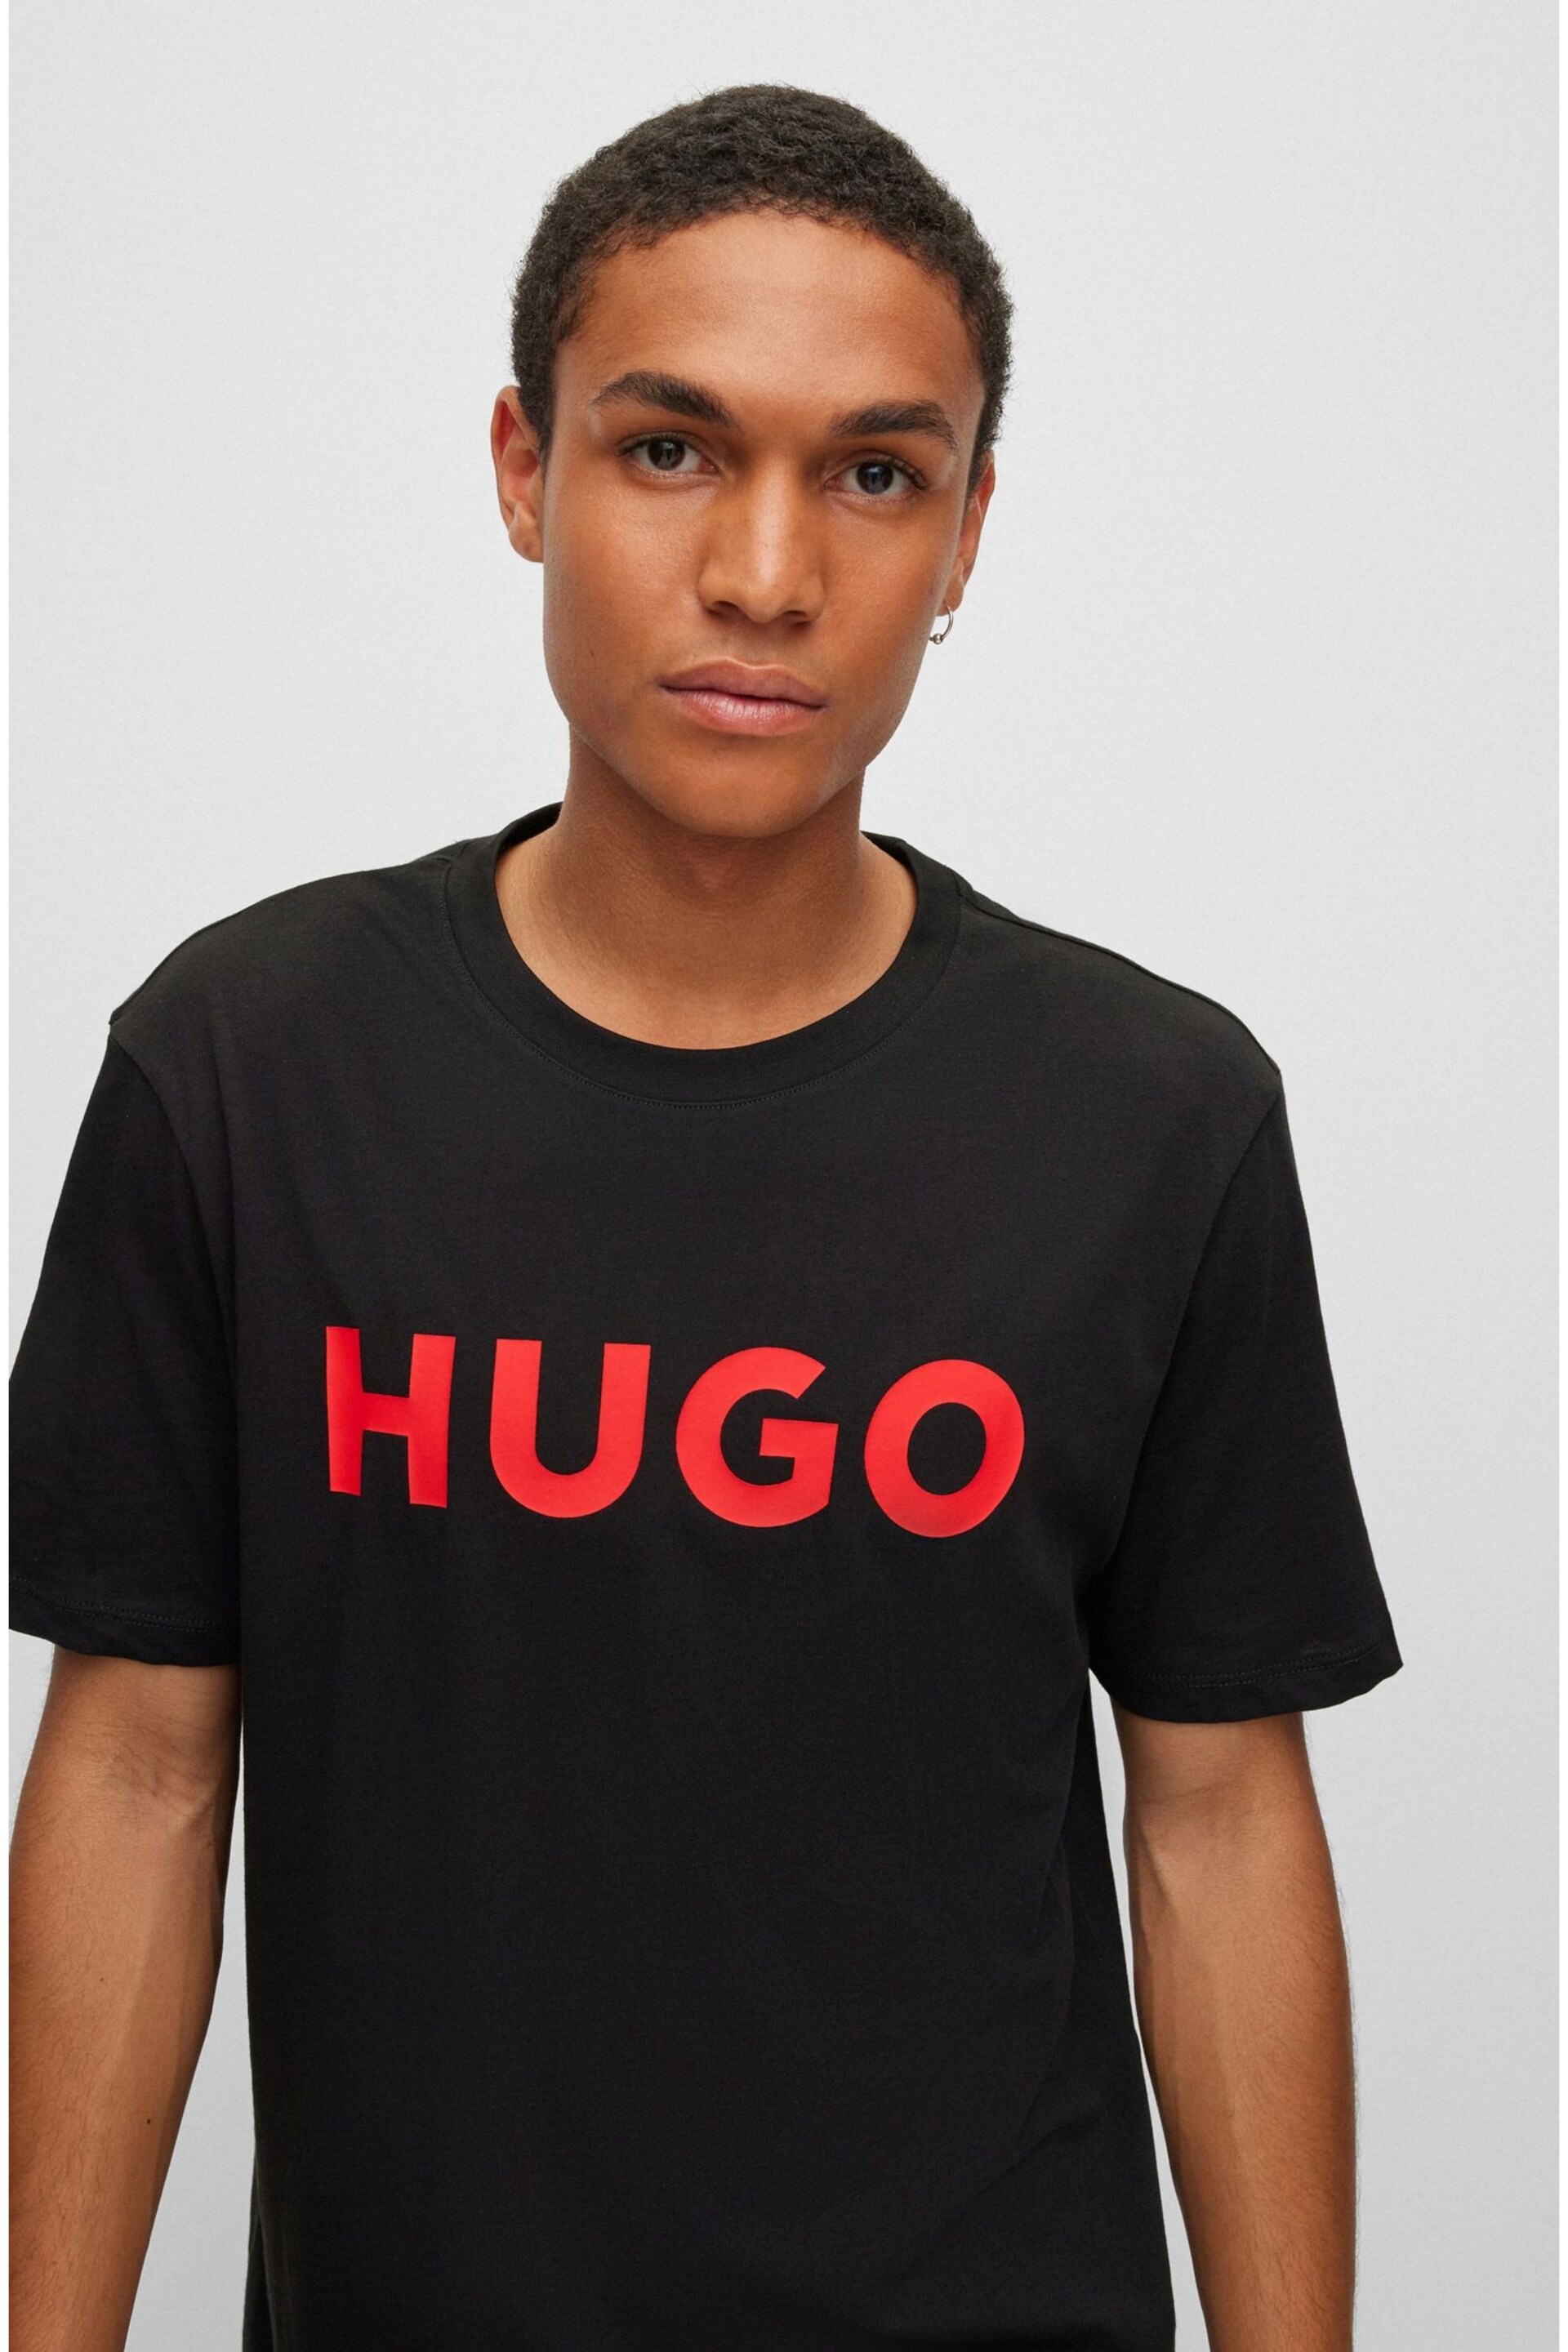 HUGO Large Chest logo T-Shirt - Image 4 of 5